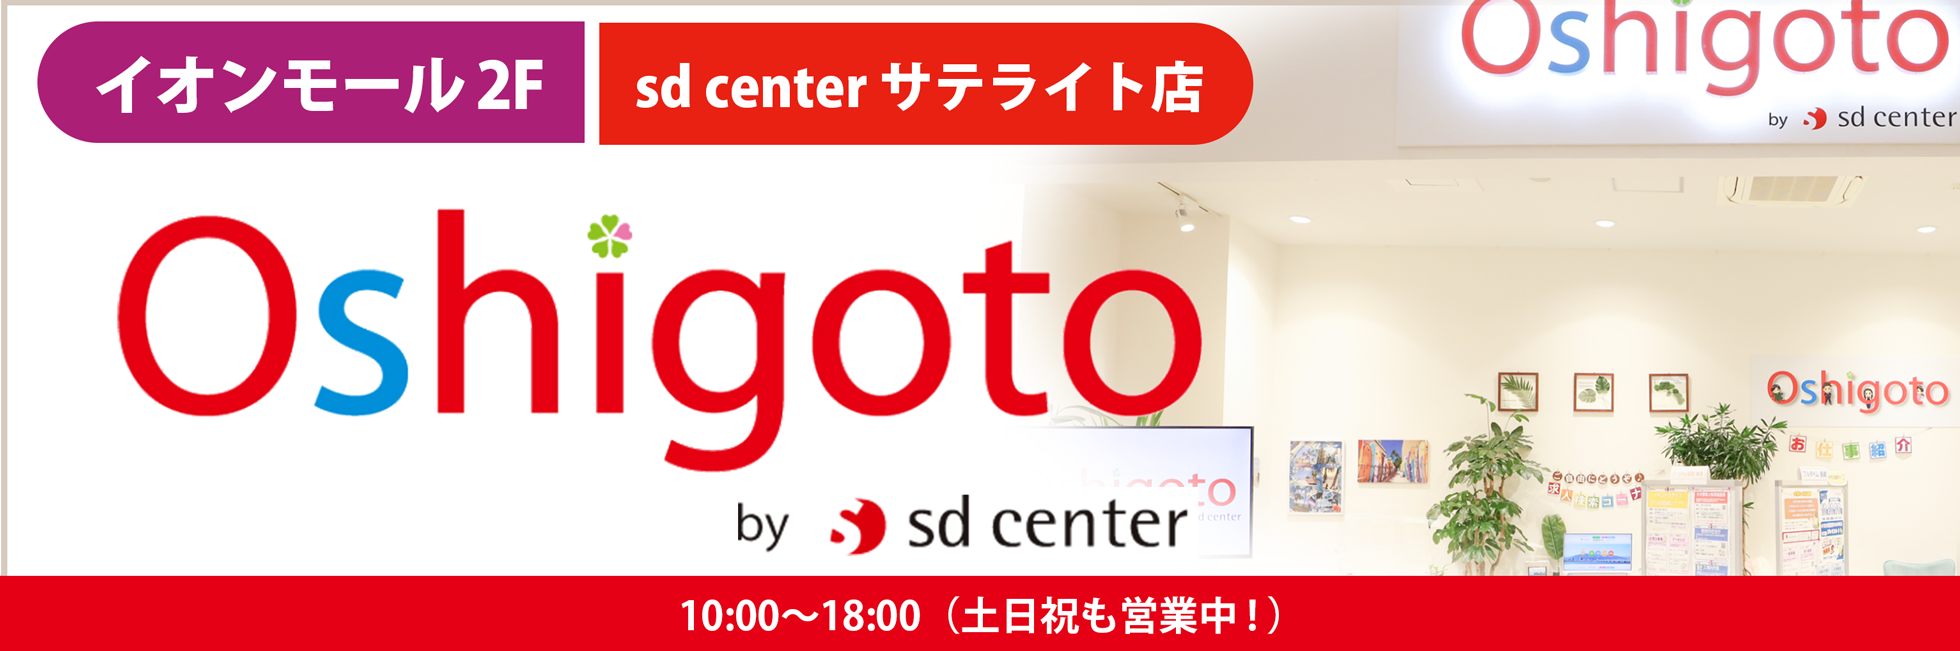 イオンモール徳島2F｜sd center サテライト店！| Oshigoto by sdcenter | 10:00〜18:00（土日祝も営業中！）